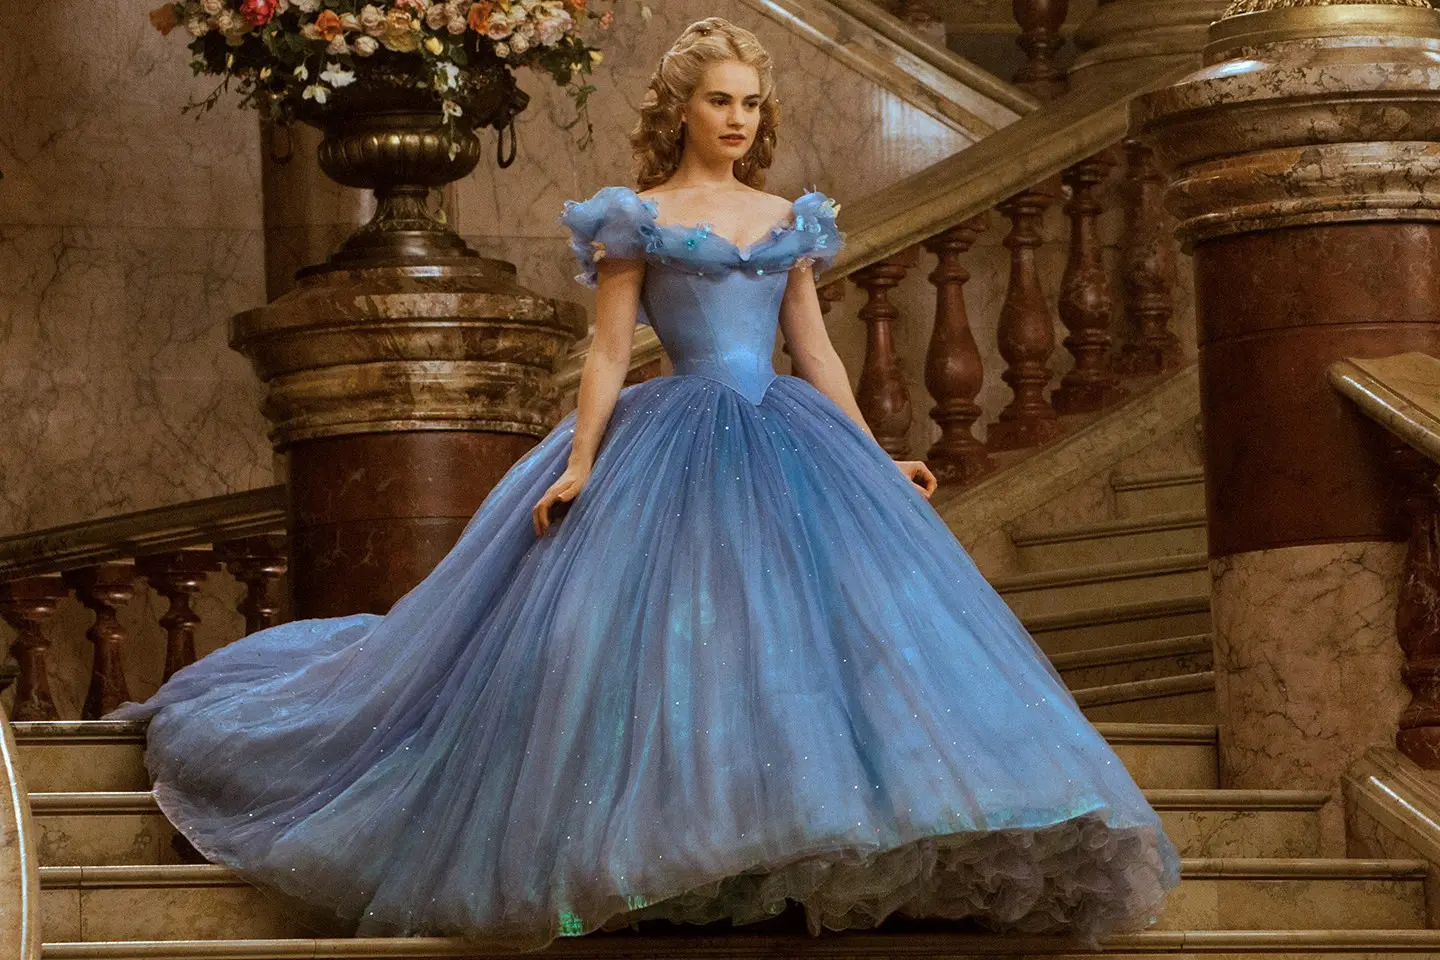 Cinderella memukau dengan gaun biru untuk pesta dansa. (Vanity Fair)